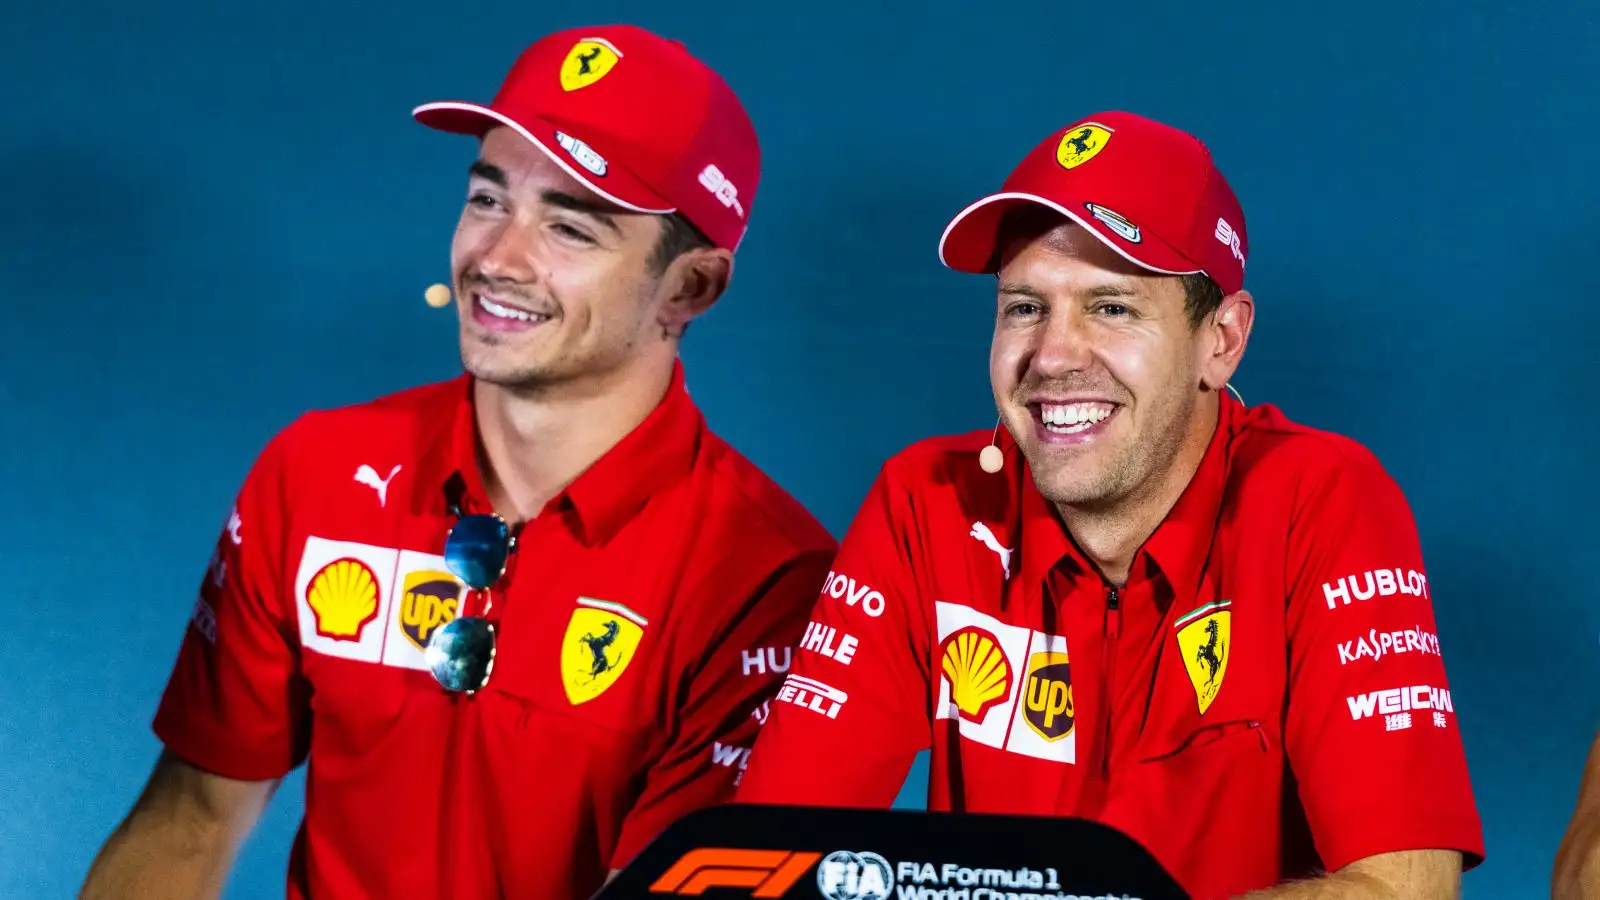 Charles Leclerc and Sebastian Vettel. Monza, September 2019.